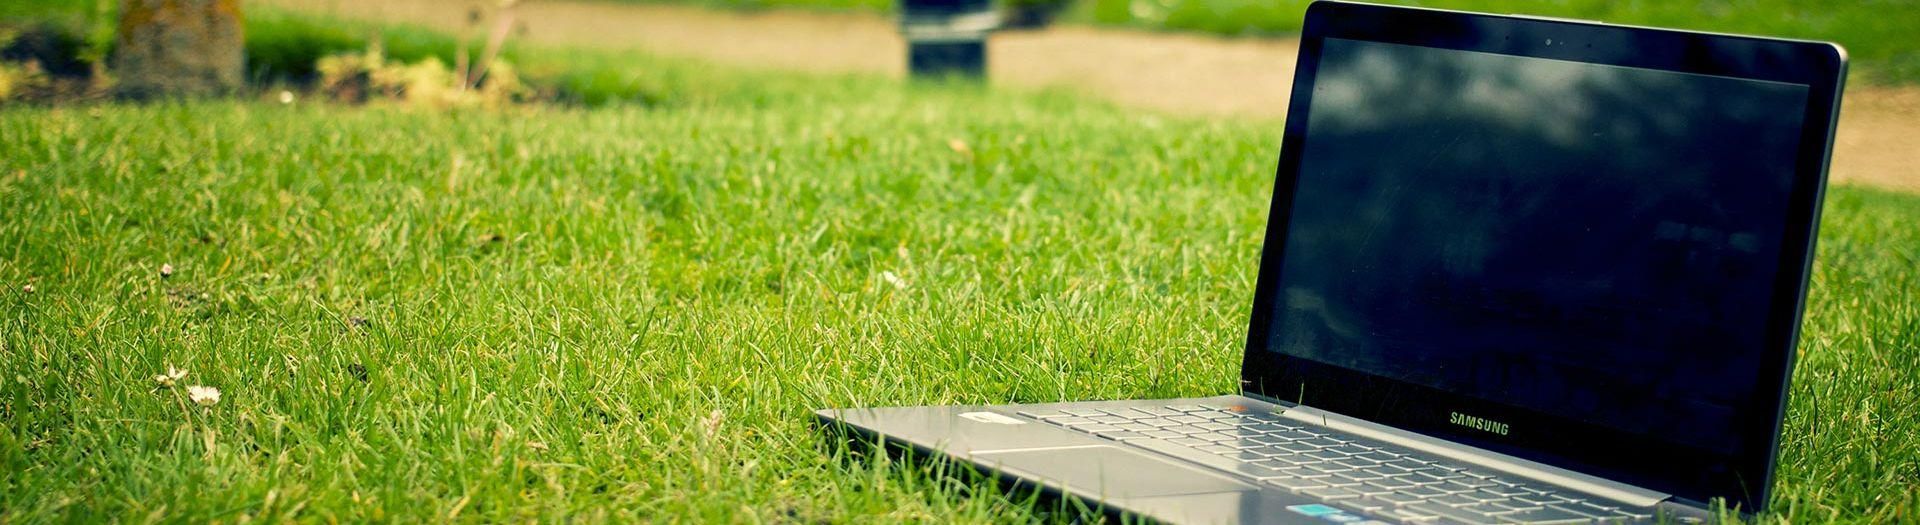 laptop-notebook-grass-meadow-9b558d75 Scan | BRIGHT Software B.V.